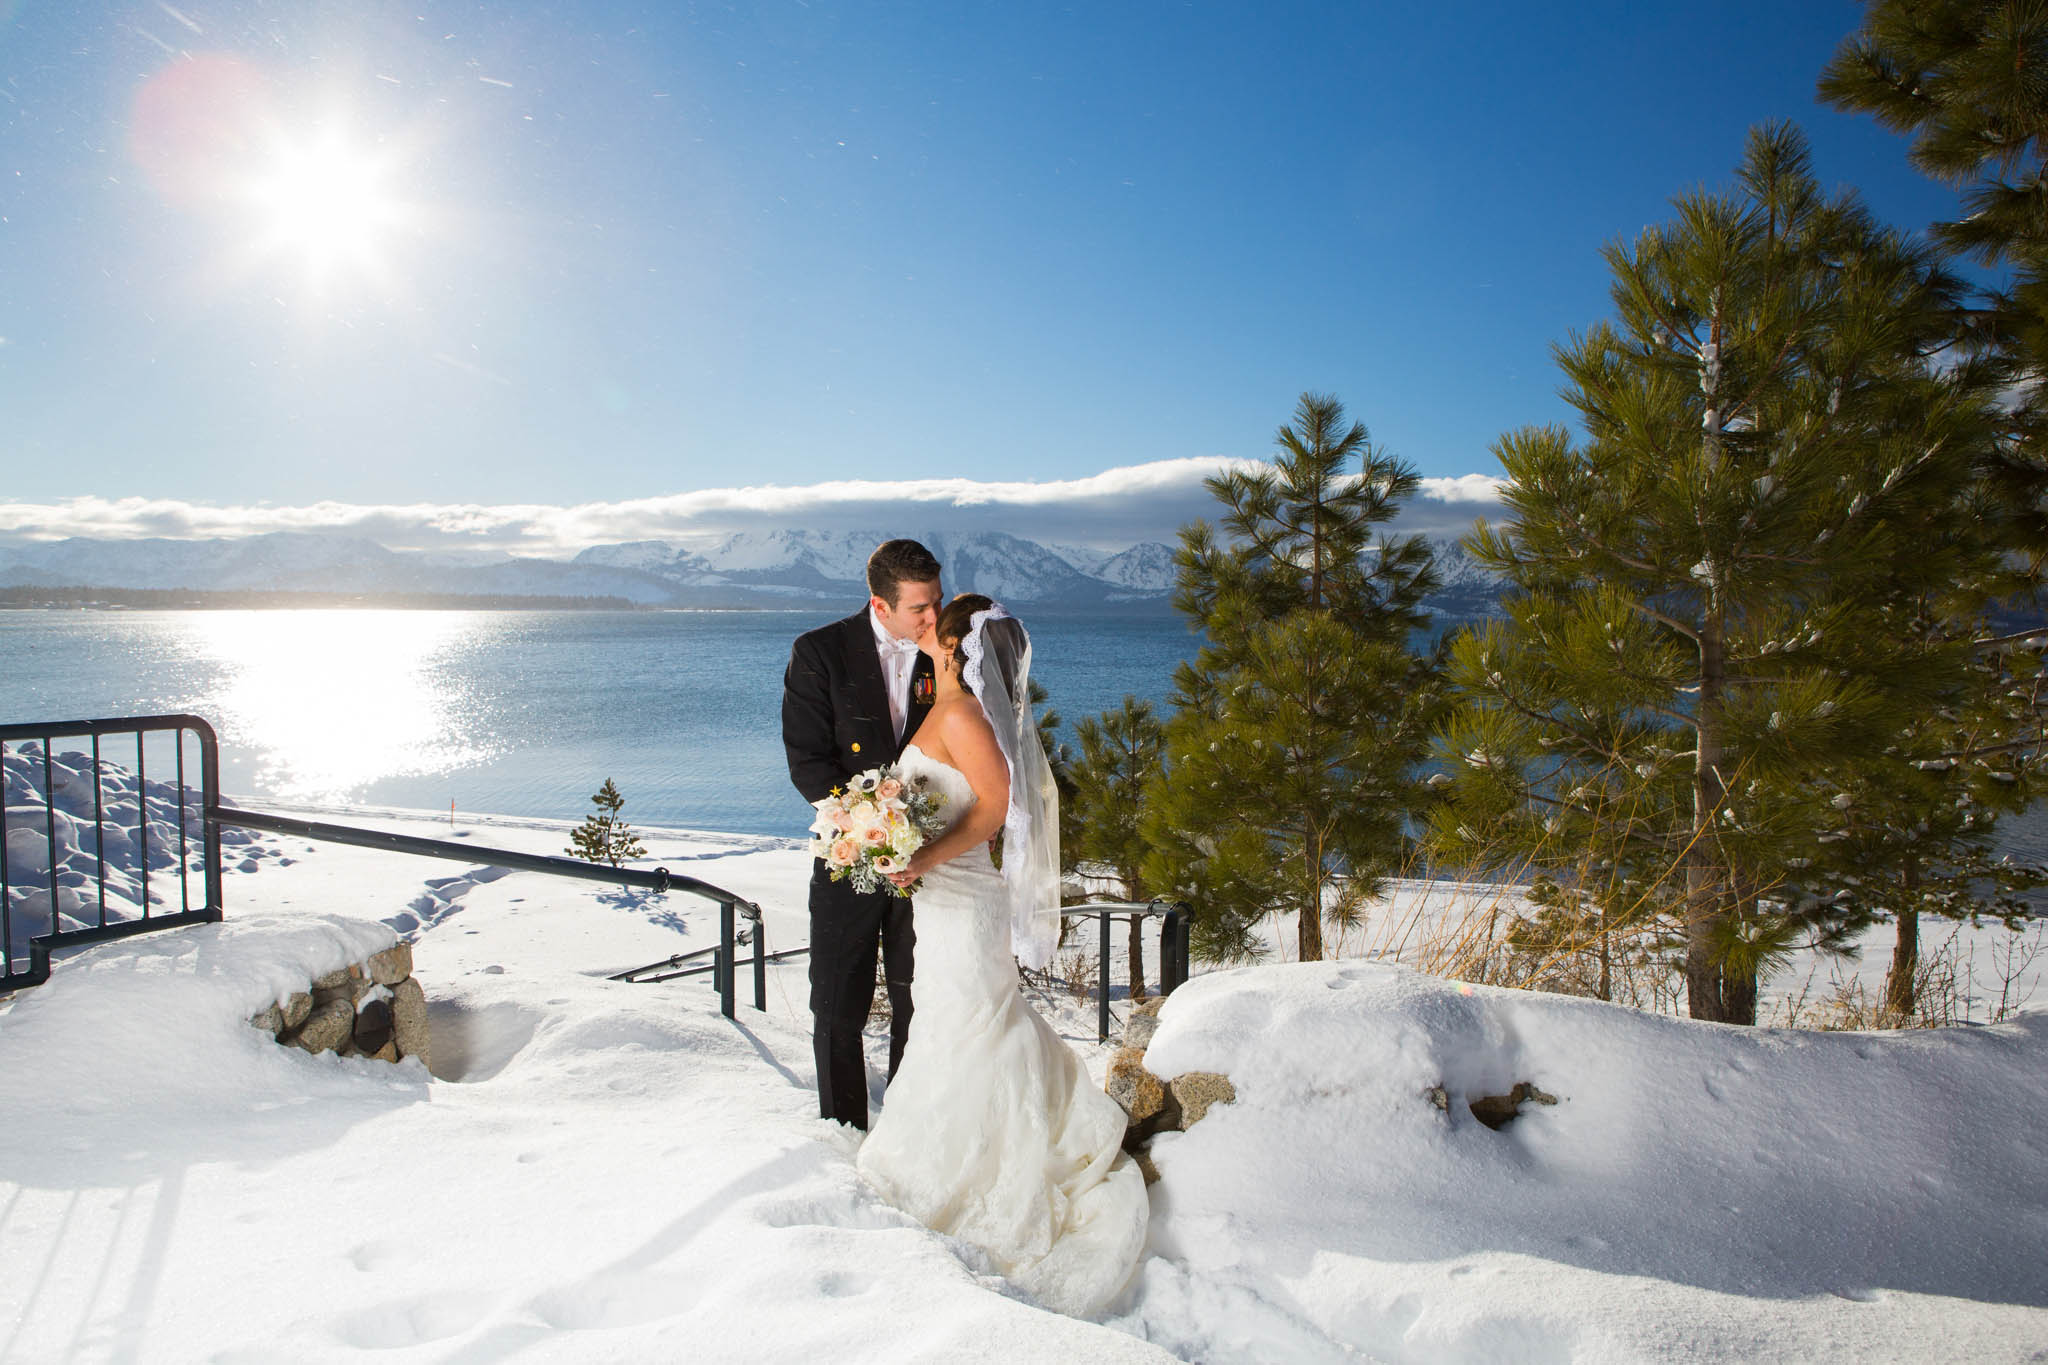 bride and groom portrait, lake view, snow, white bouquet, sun flare, uniform